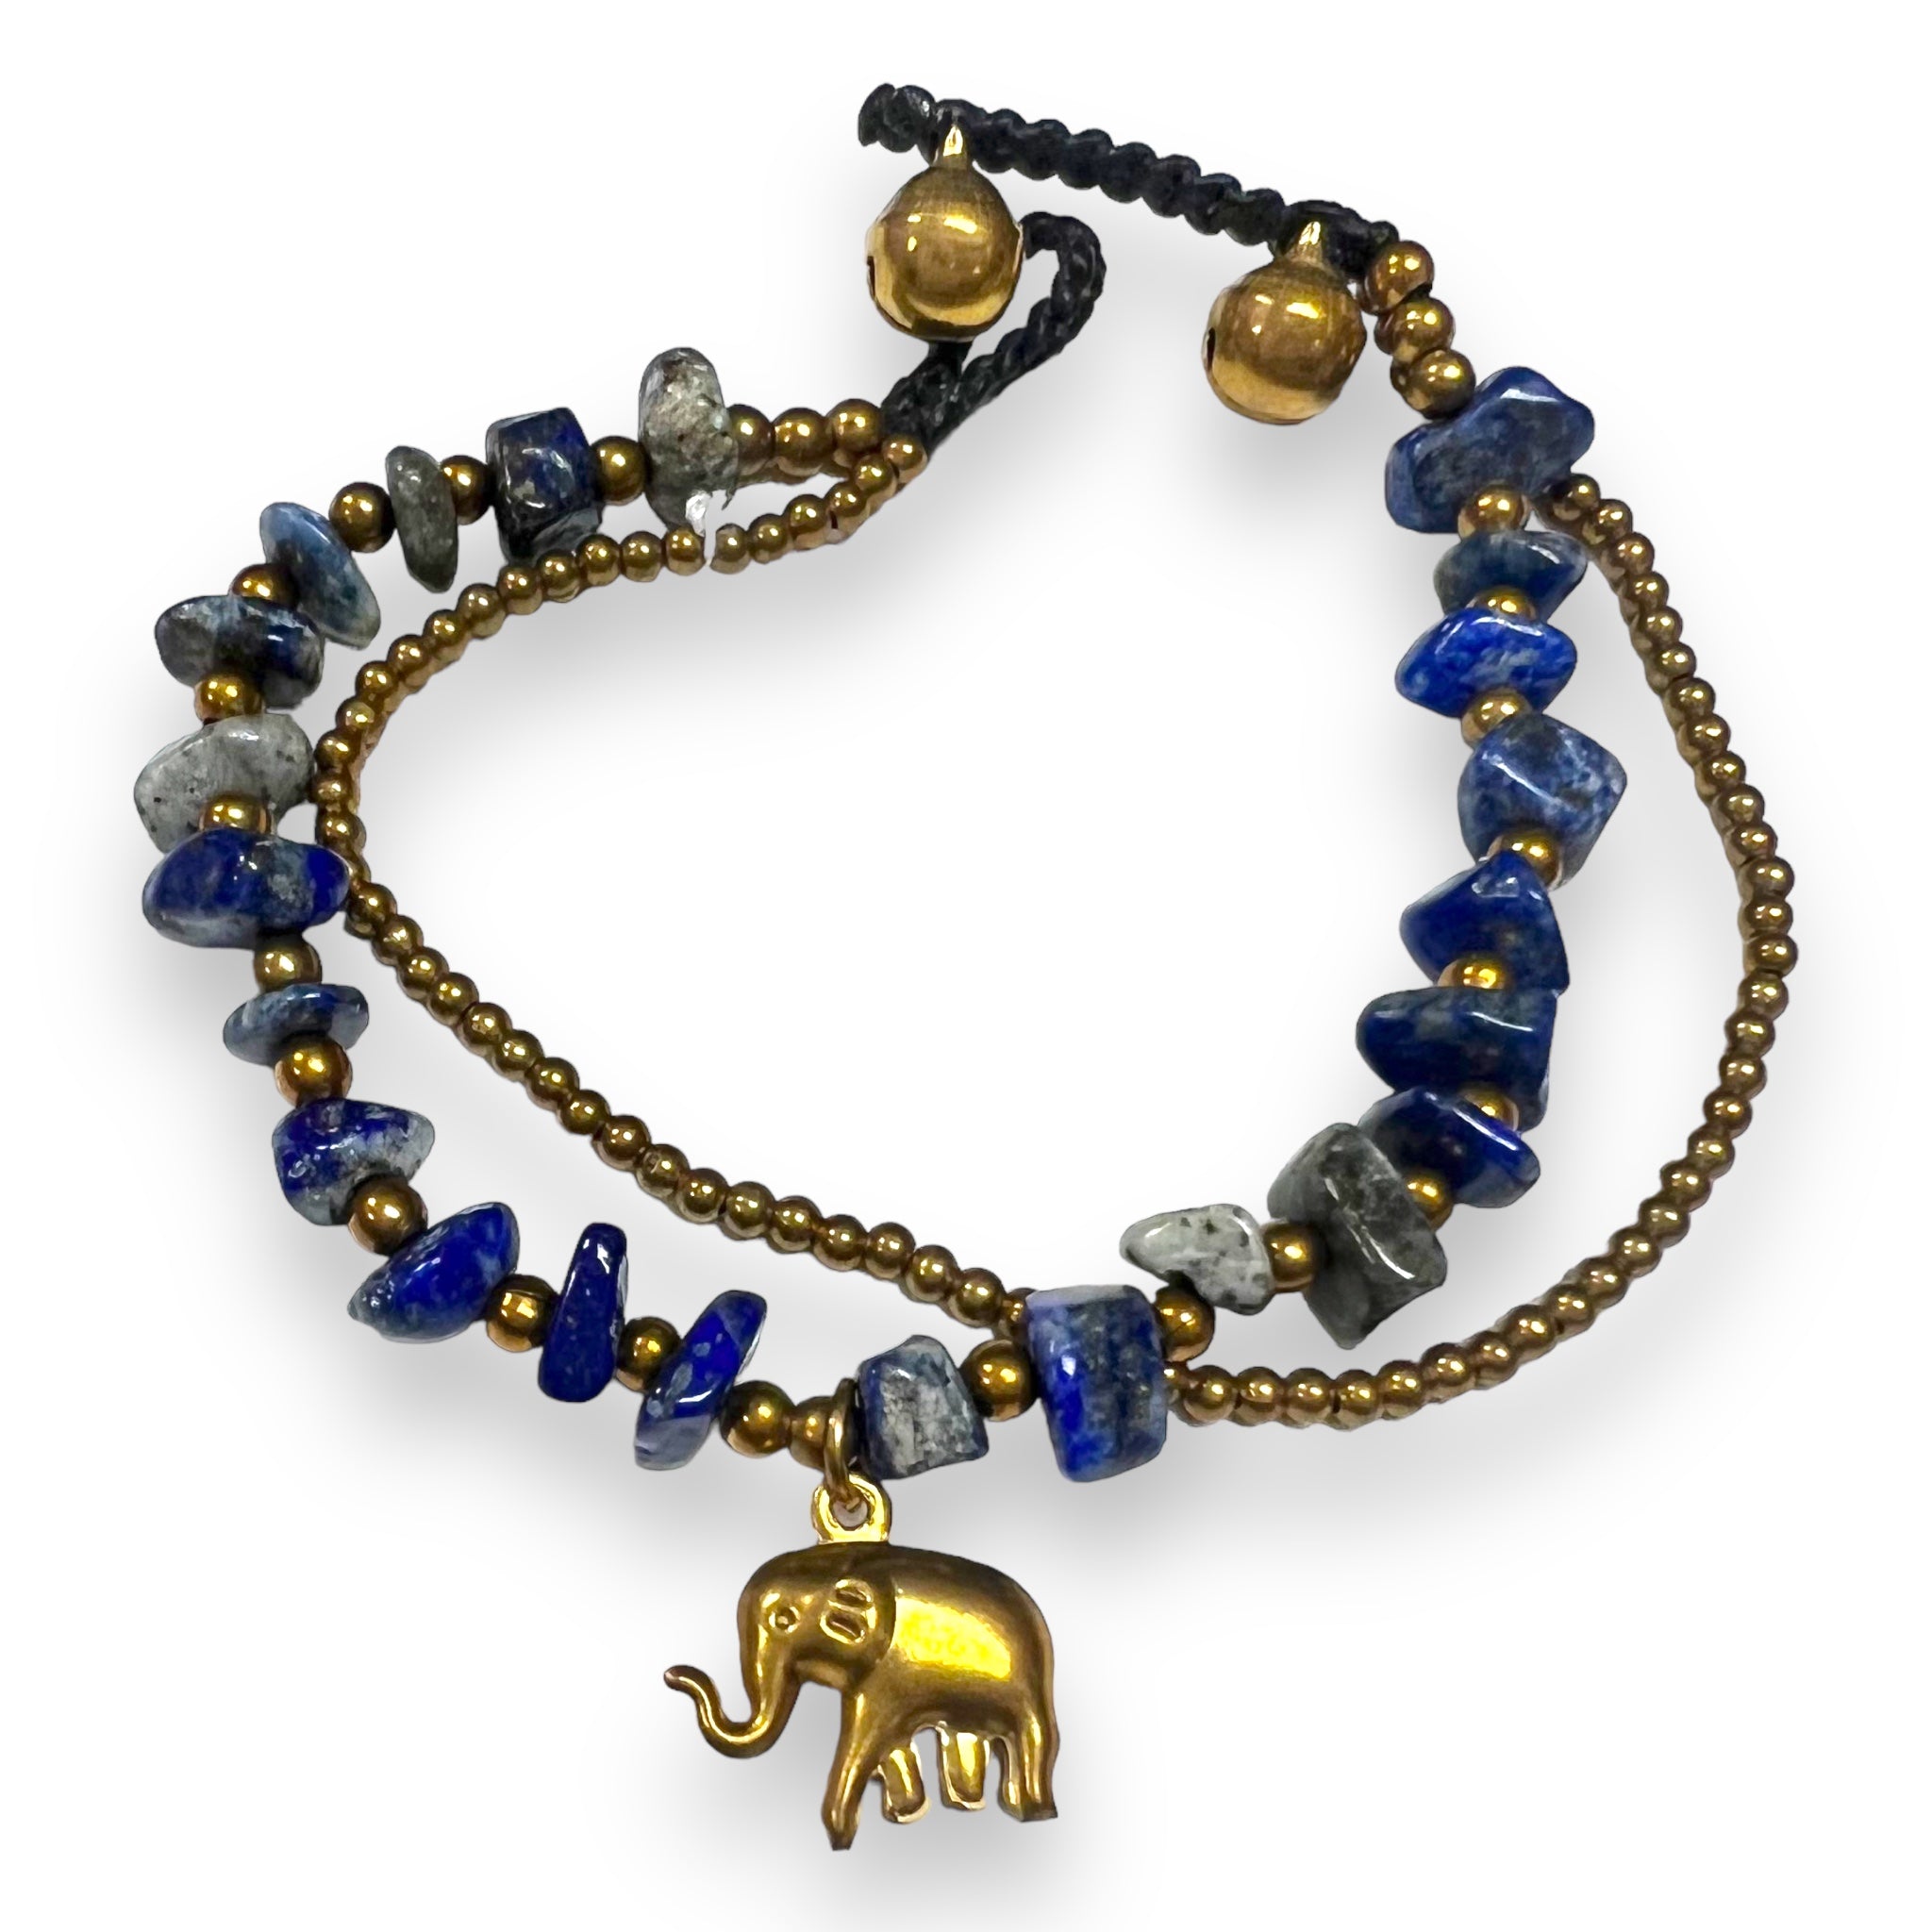 Handmade Bracelet Lapiz Trinket Charms Elephant with Bells Beaded 8 Inch Jewelry